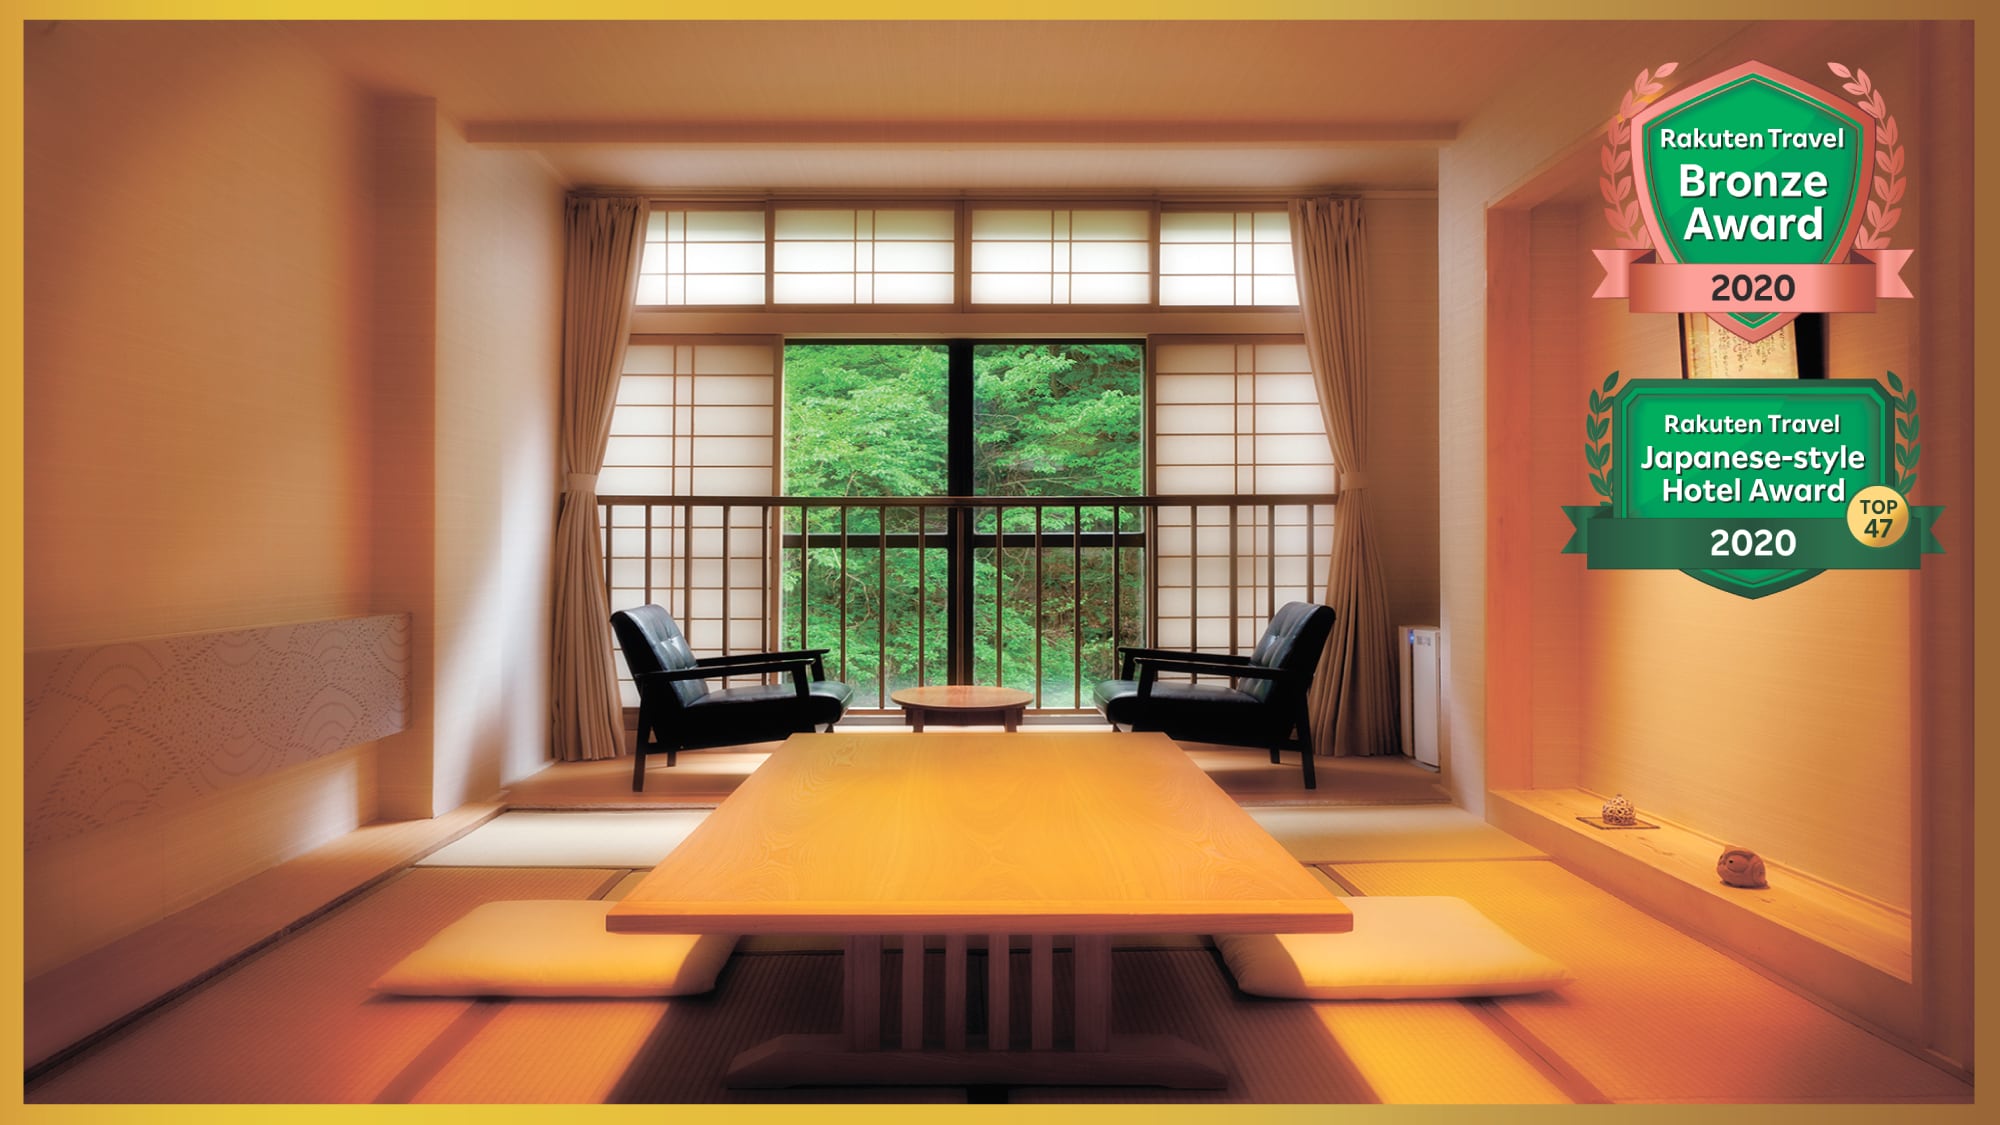 普通客房“Yumemitei”的例子♪每個房間的景觀和平面圖都不同♪